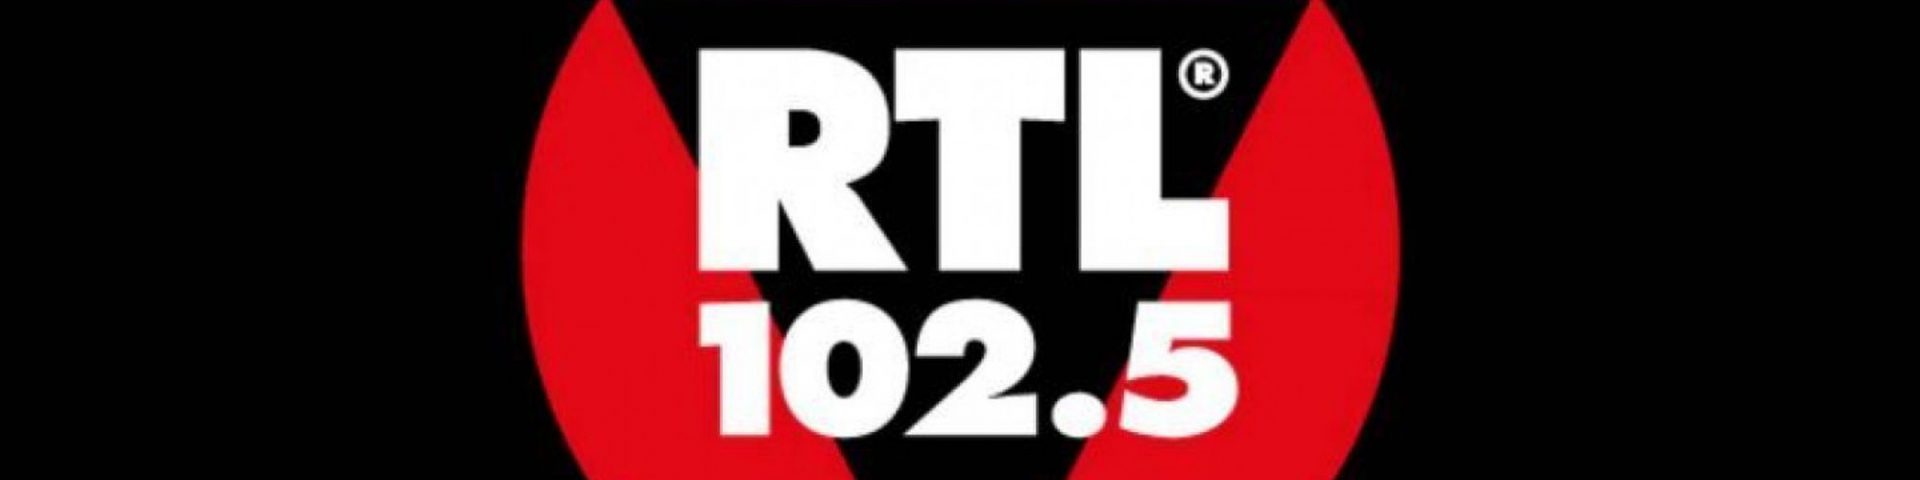 RTL 102.5 Power Hits Estate 2020 a Verona: scaletta e ordine di uscita